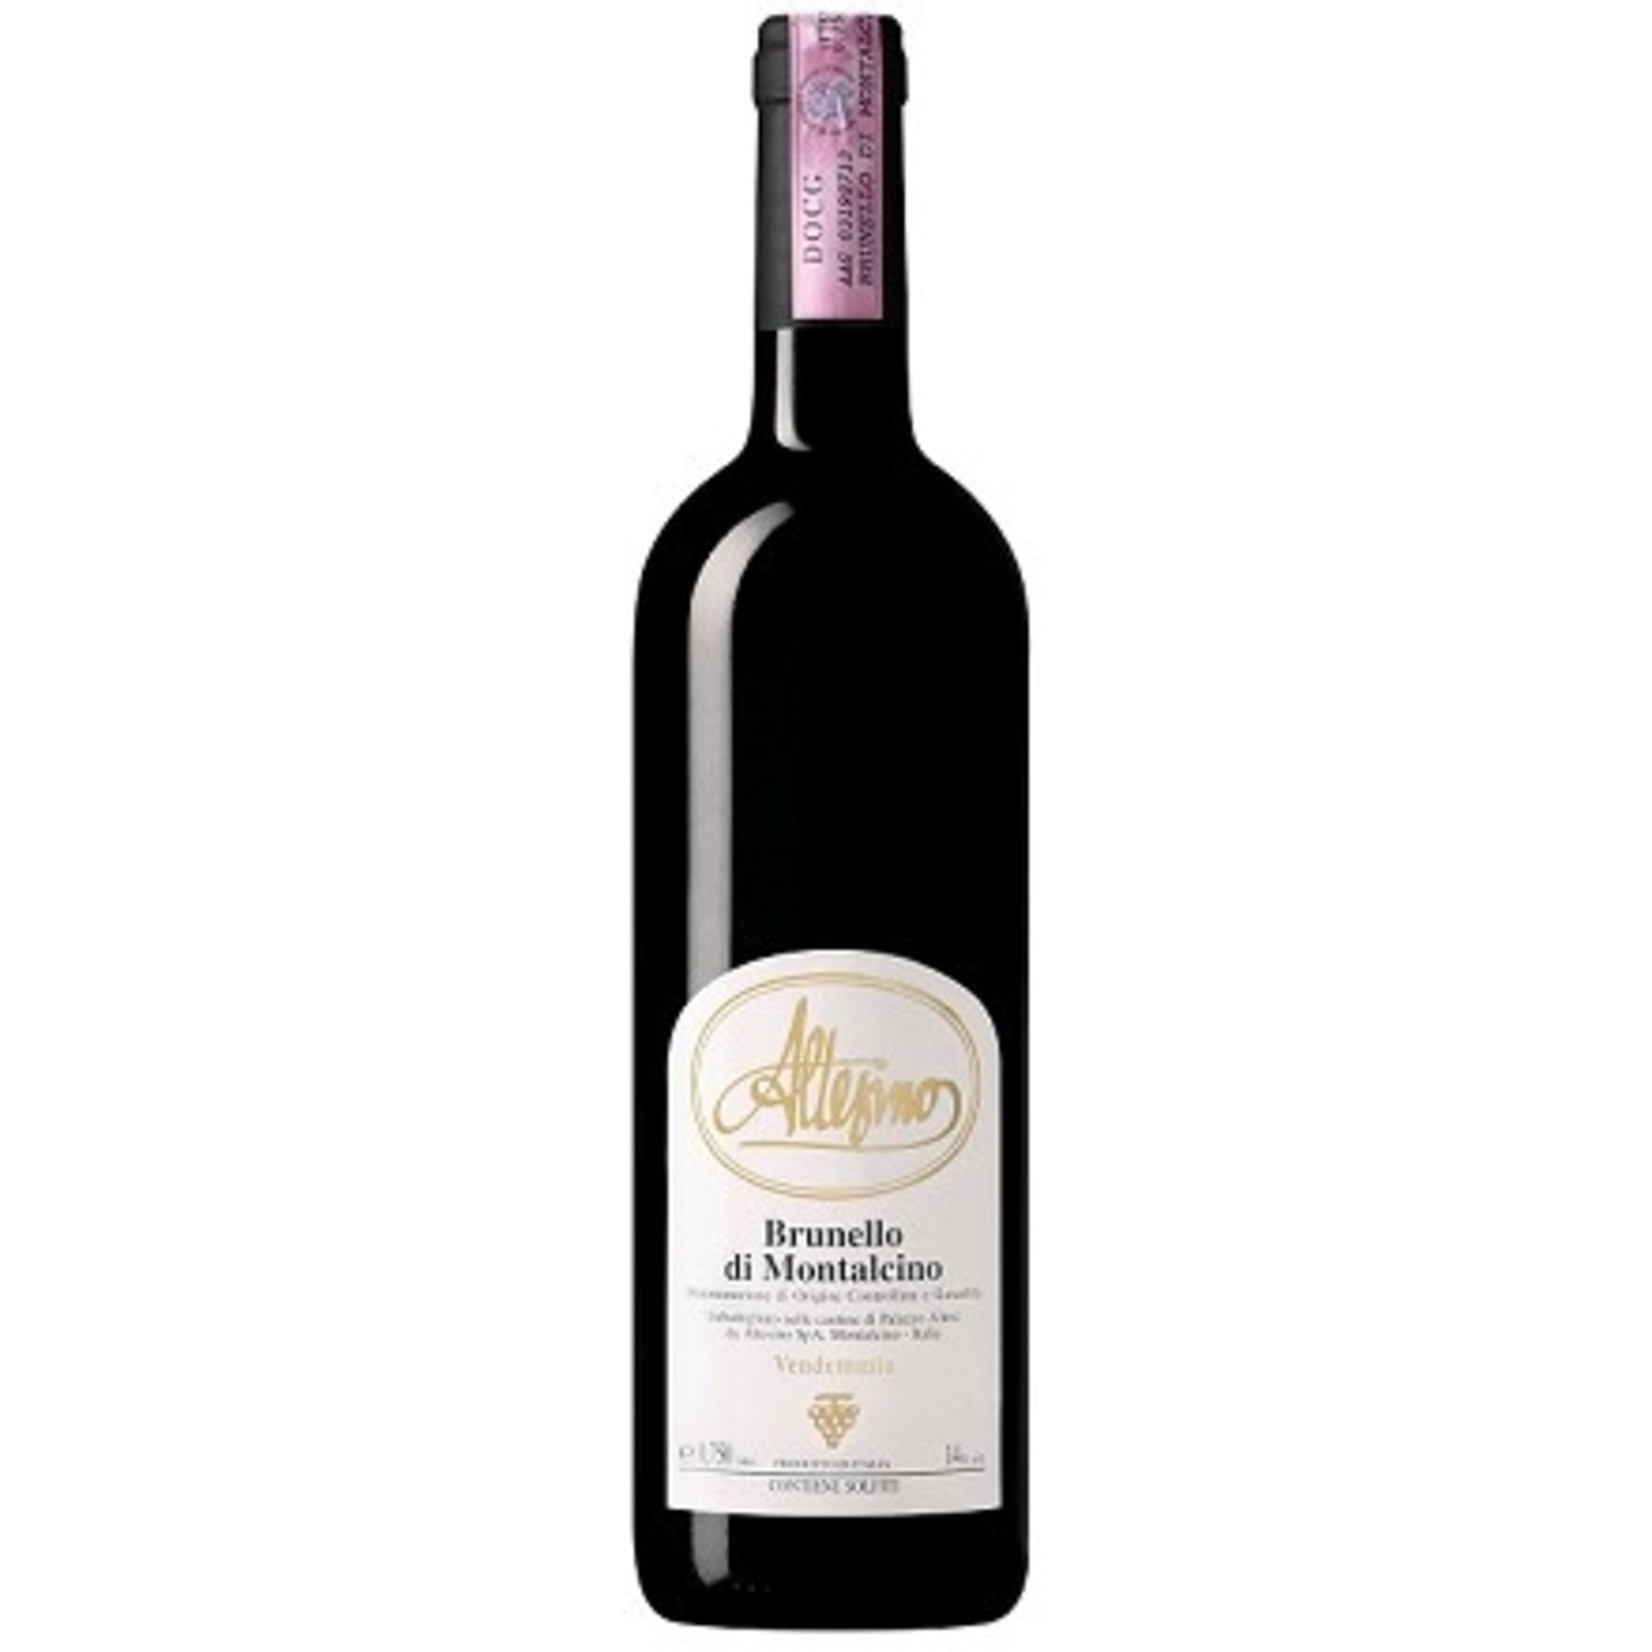 Wine Altesino Brunello di Montalcino 2016